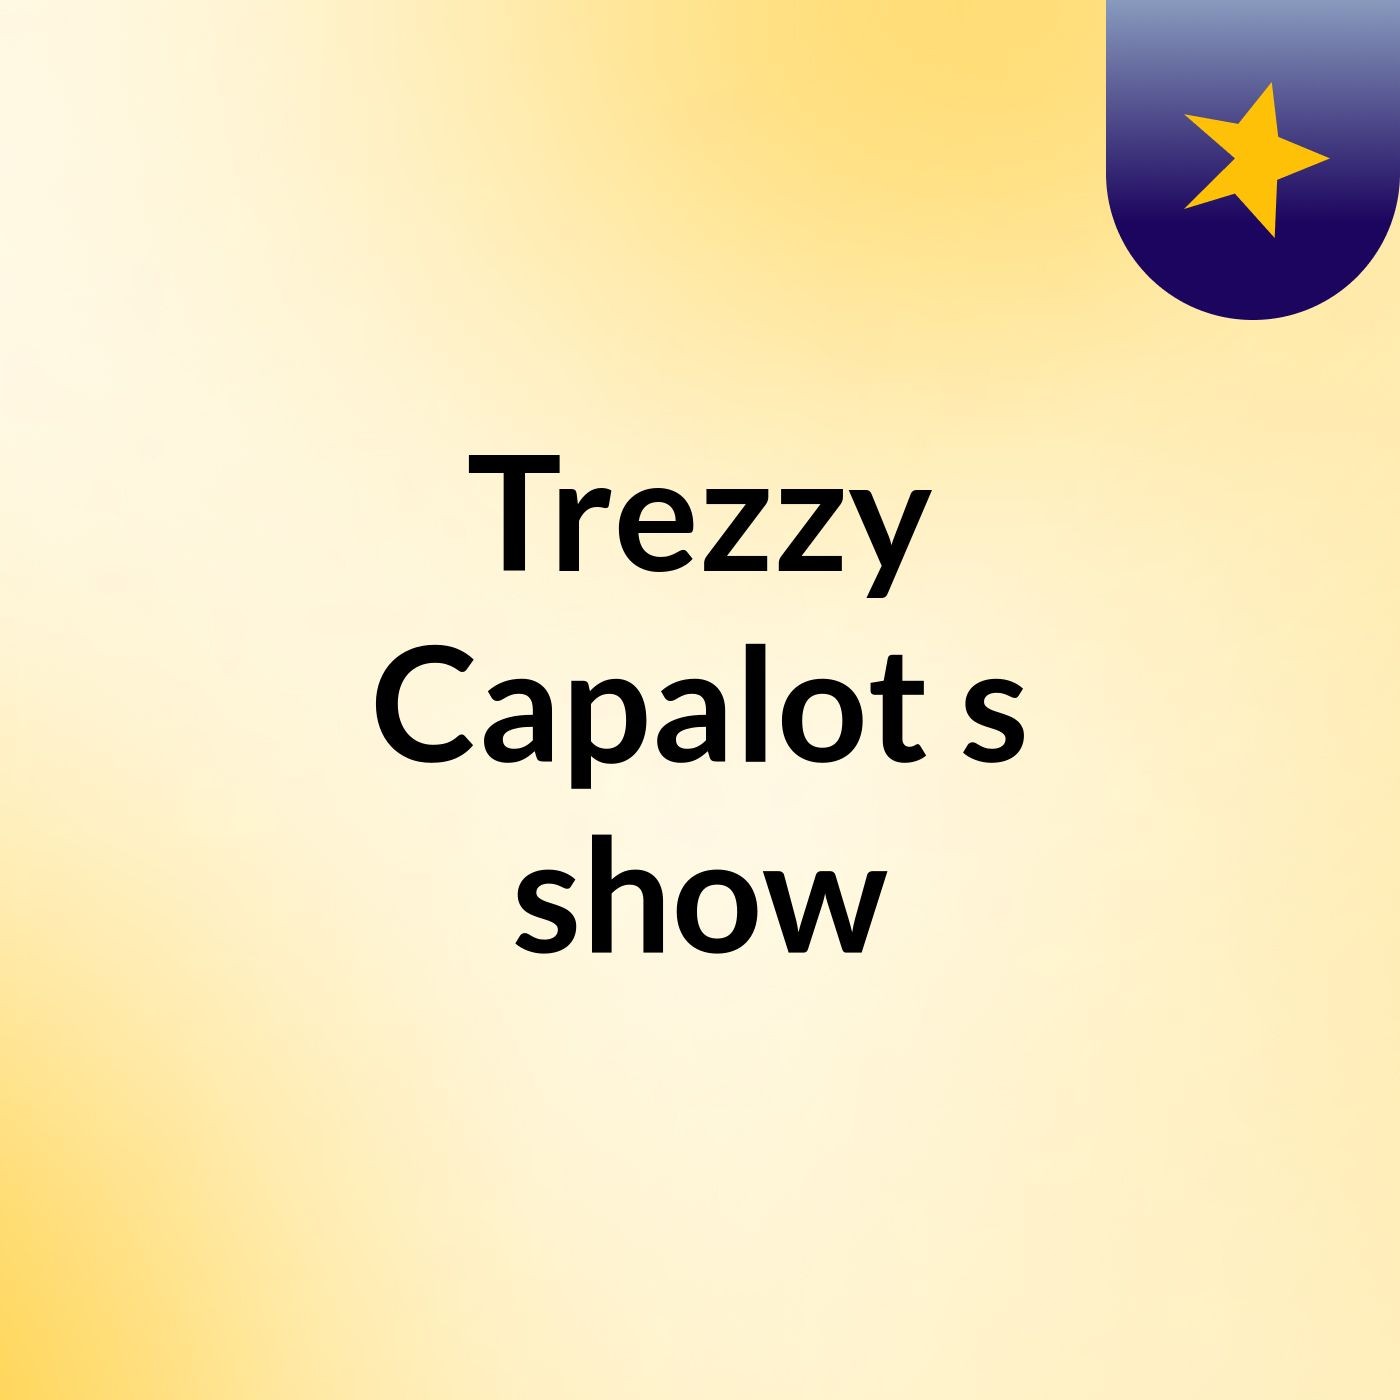 Episode 2 - Trezzy Capalot's show